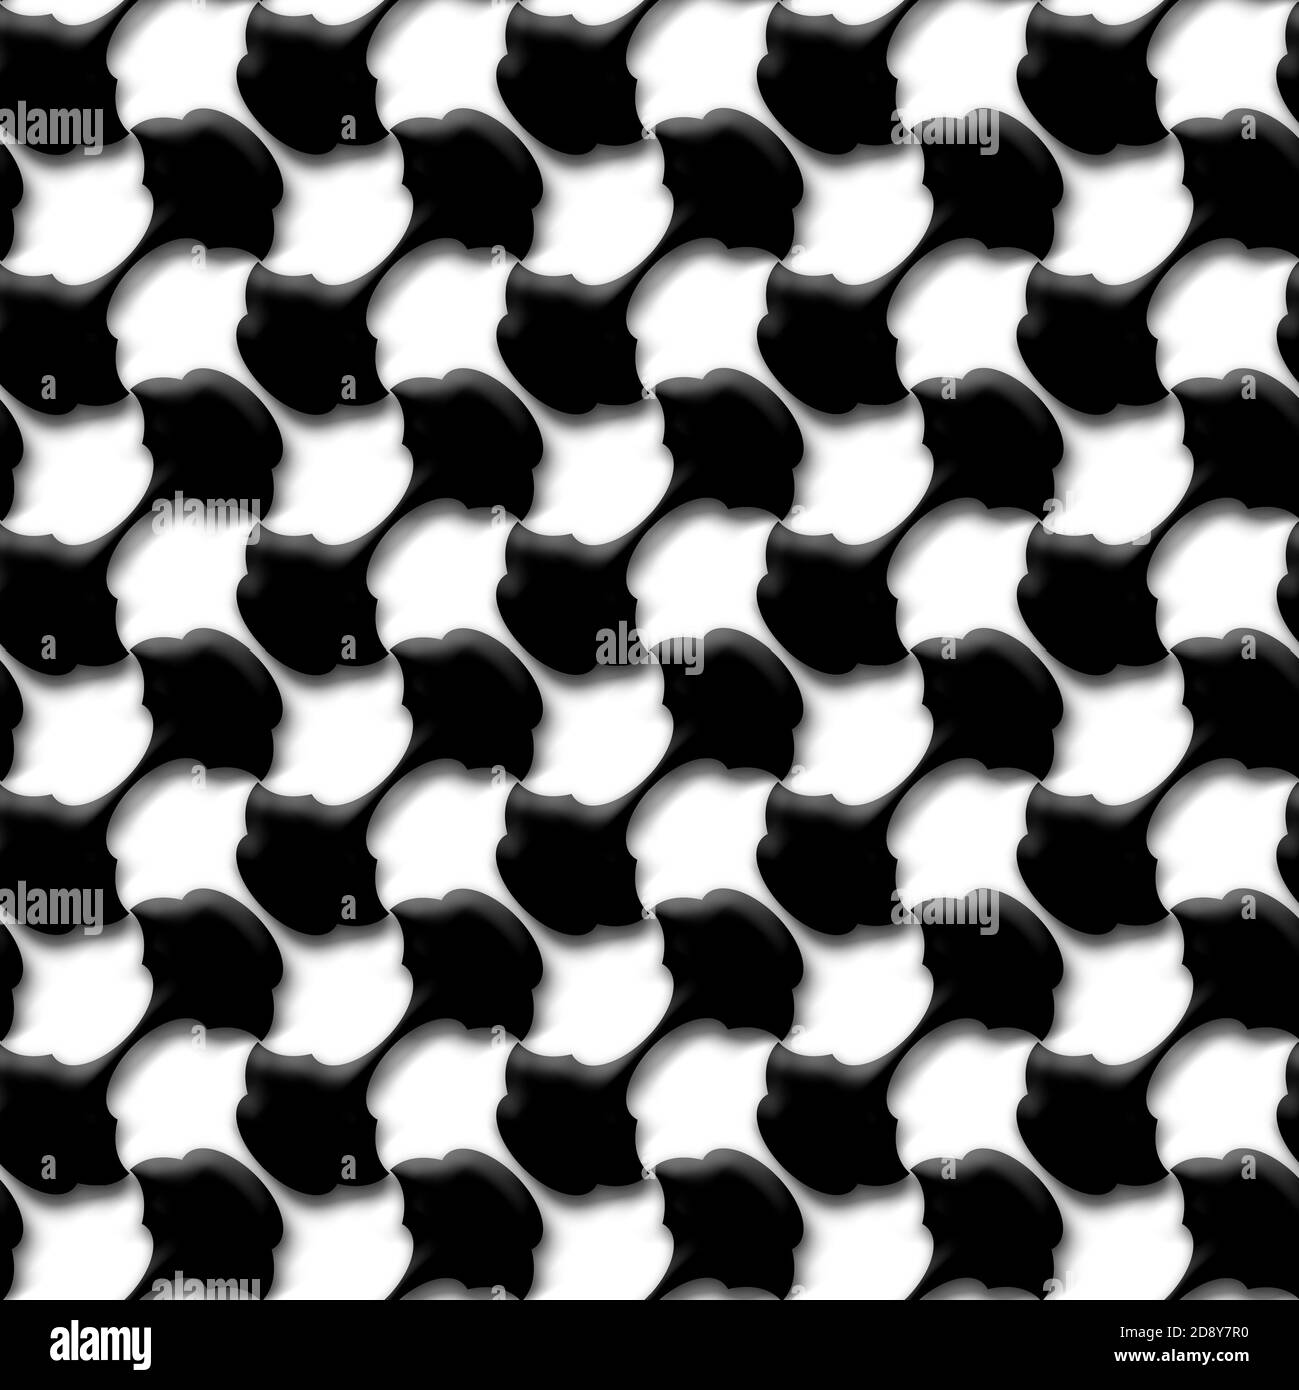 Répétition transparente du motif 3D noir et blanc Banque D'Images